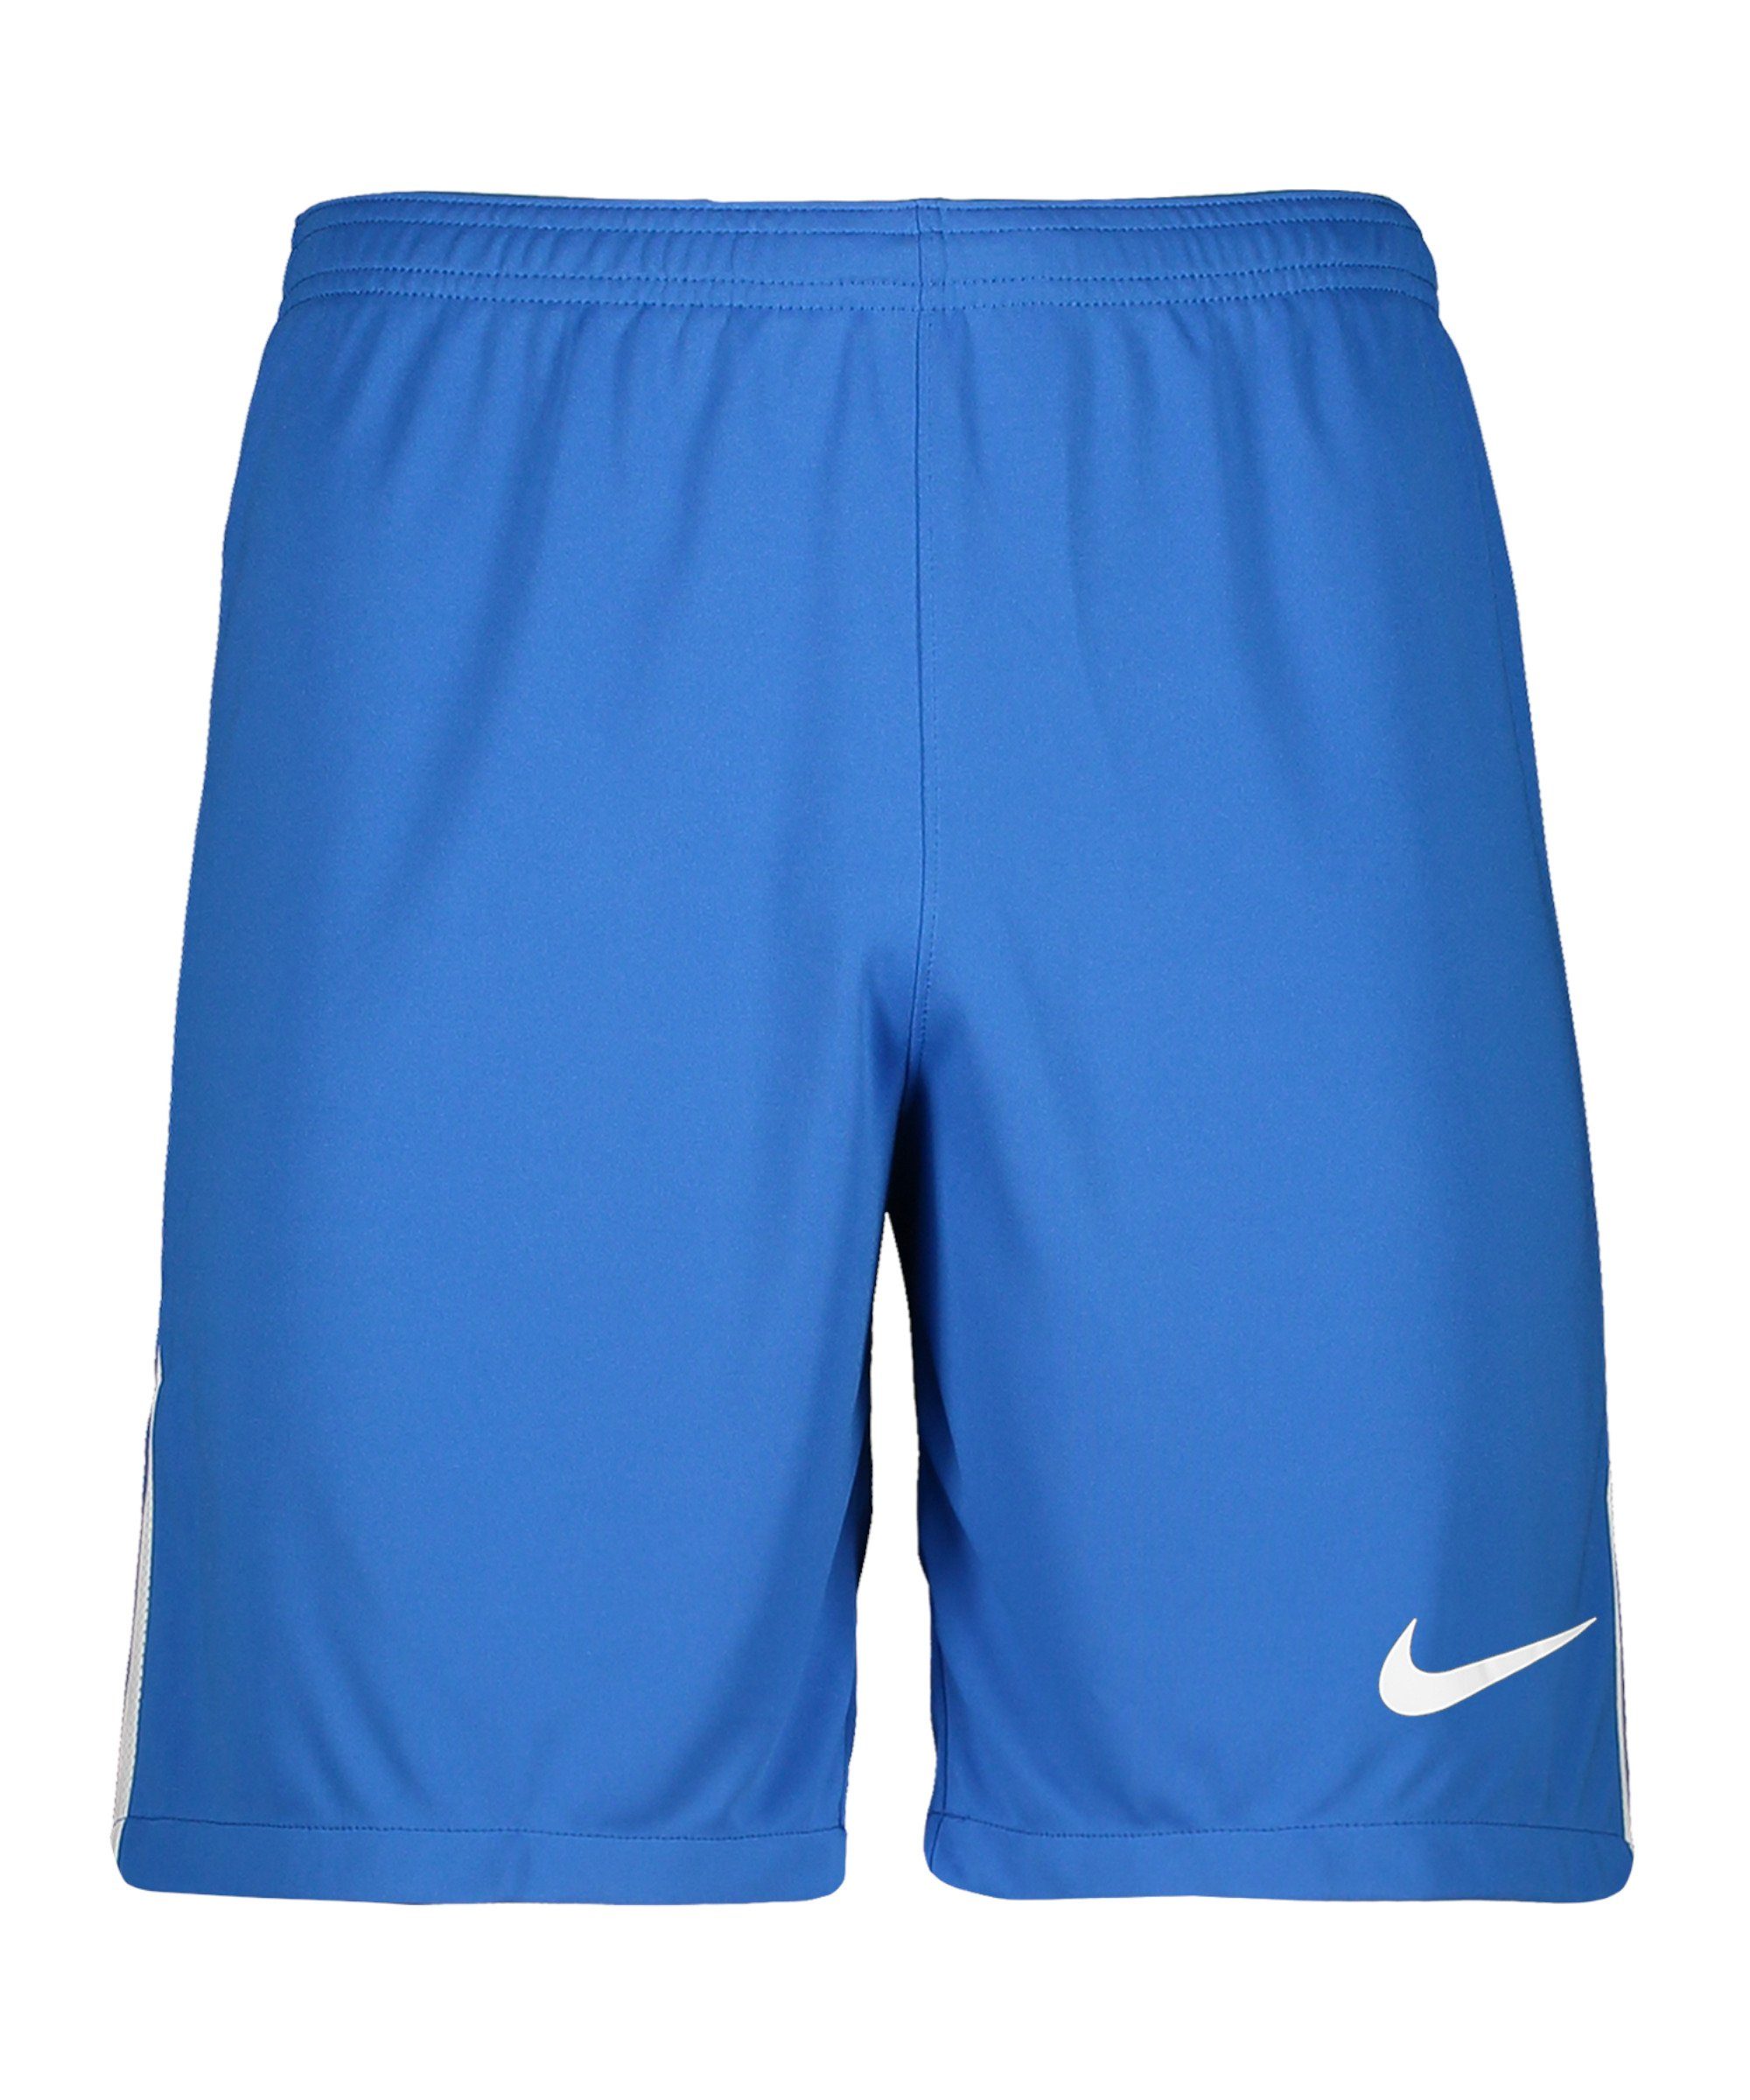 Nike Sporthose League III Short dunkelblauweissweiss